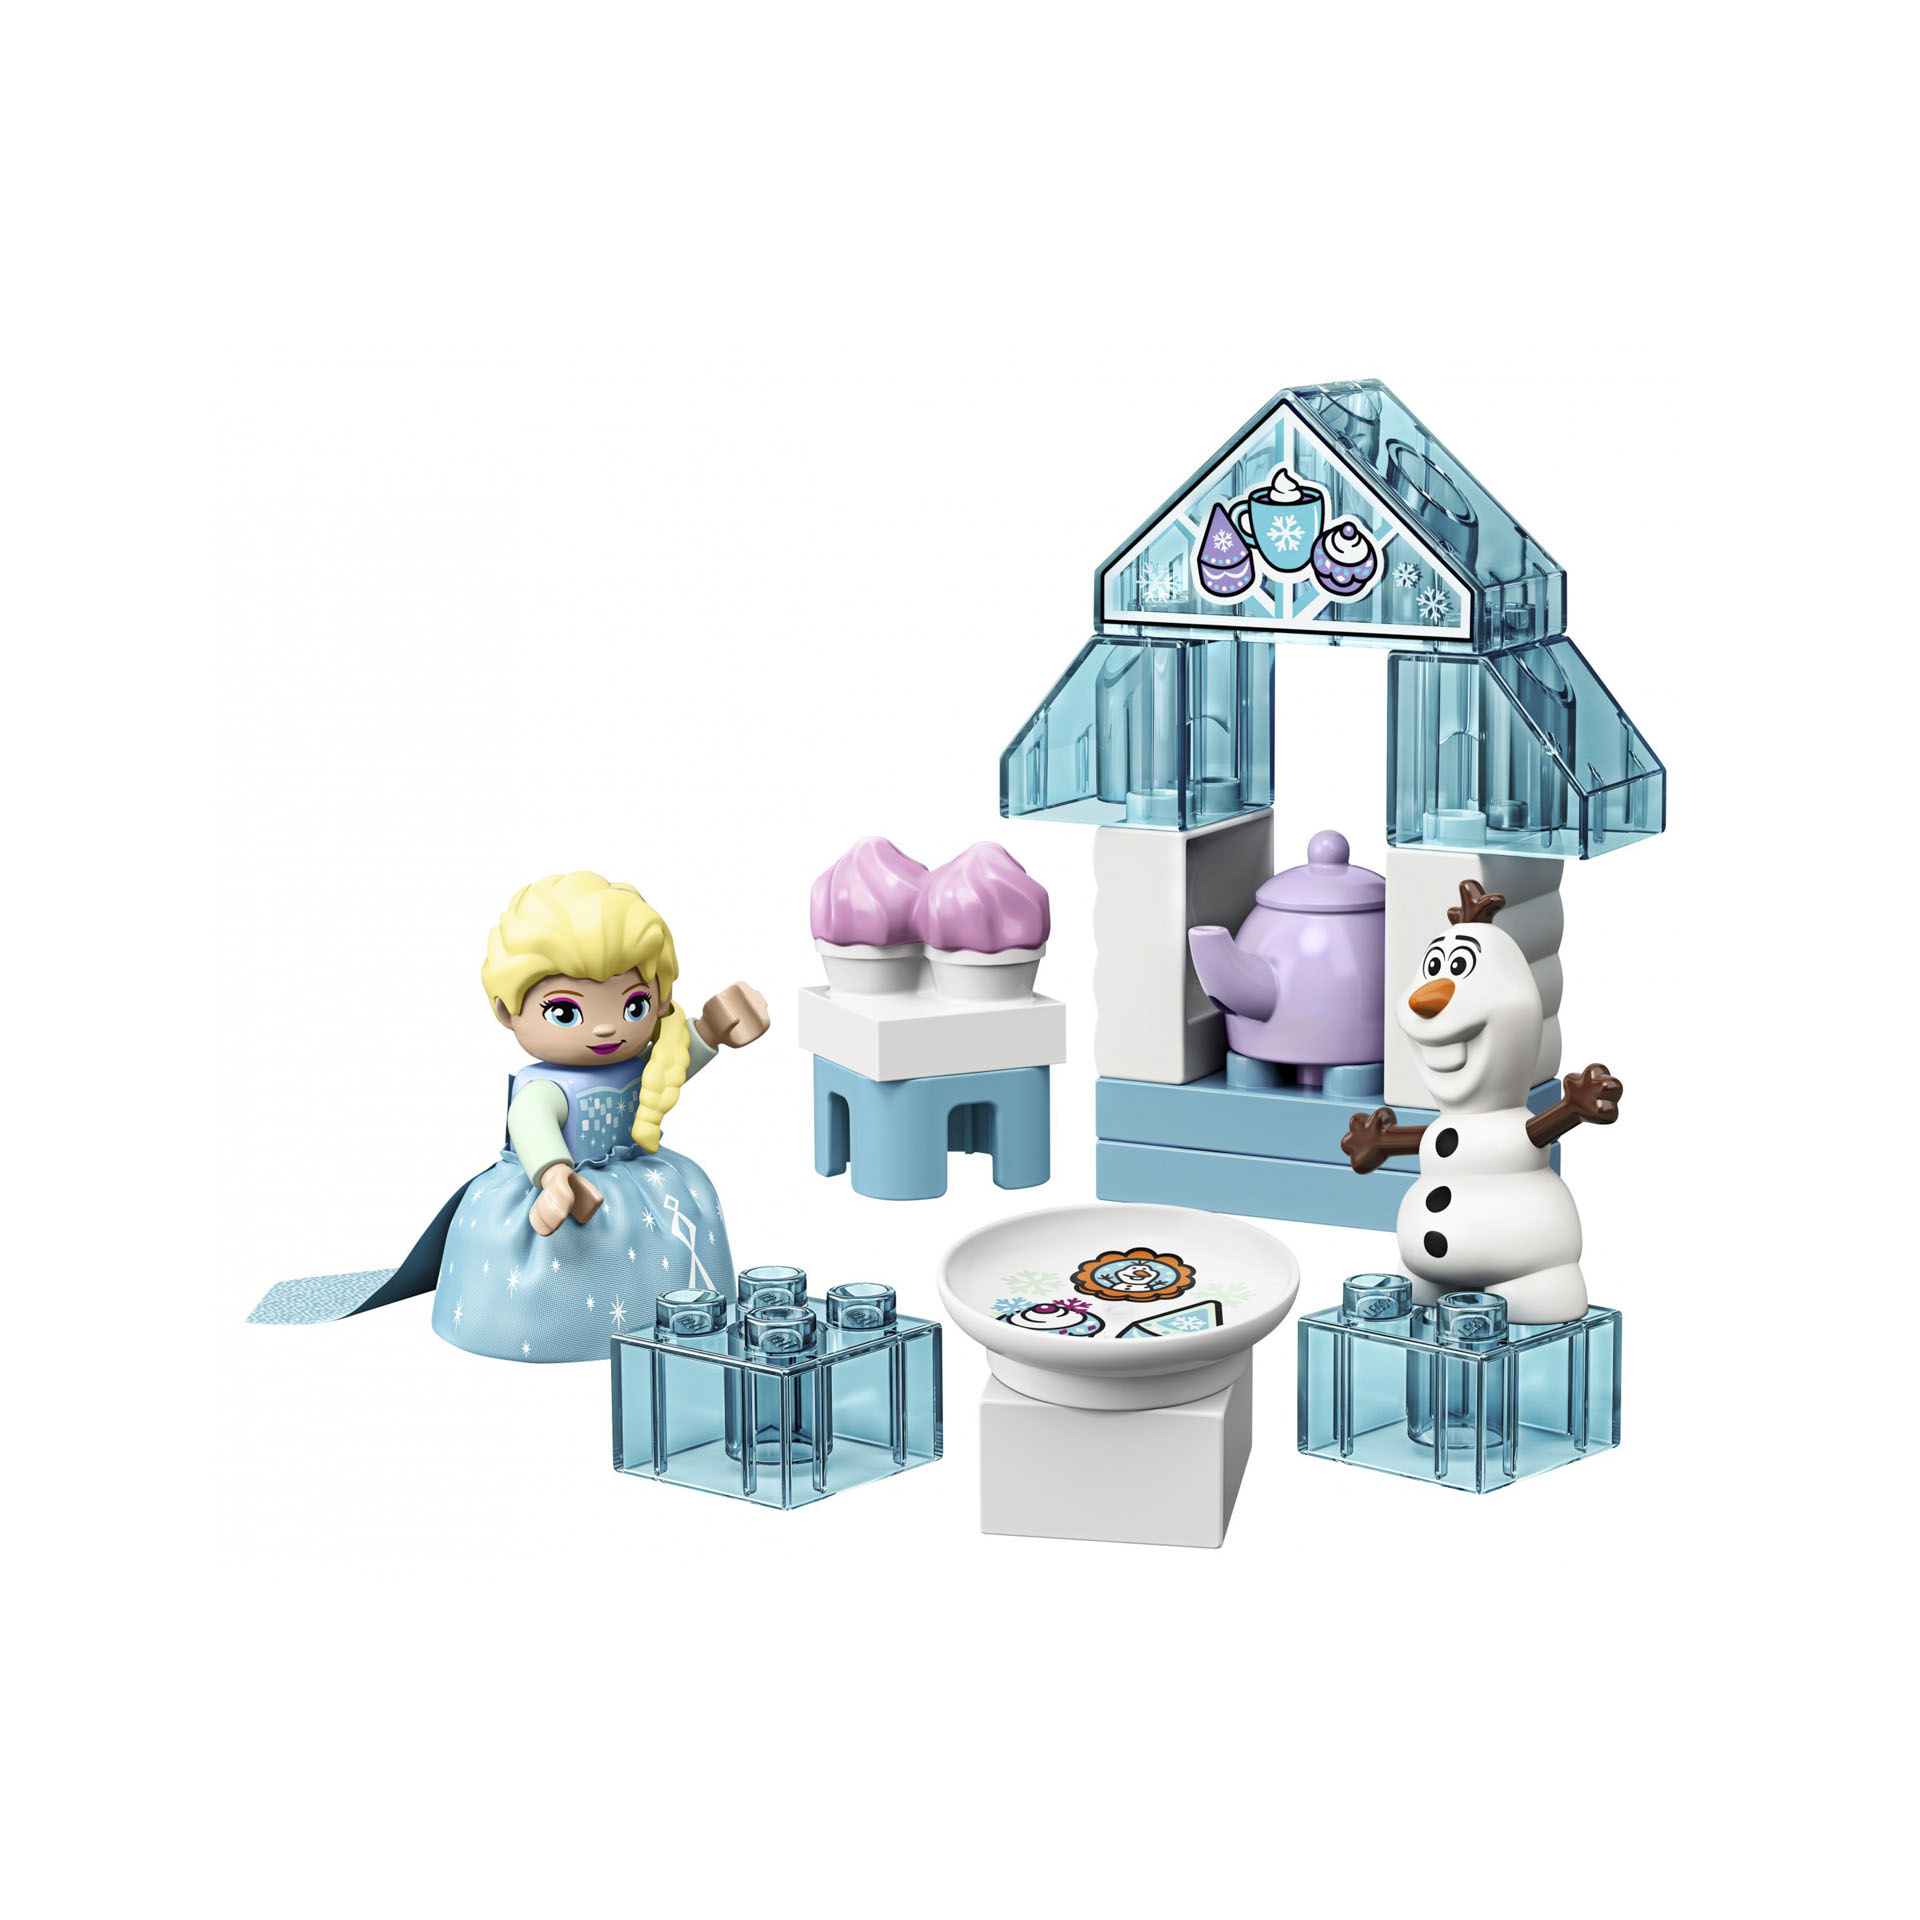 Il tea party di Elsa e Olaf 10920, , large